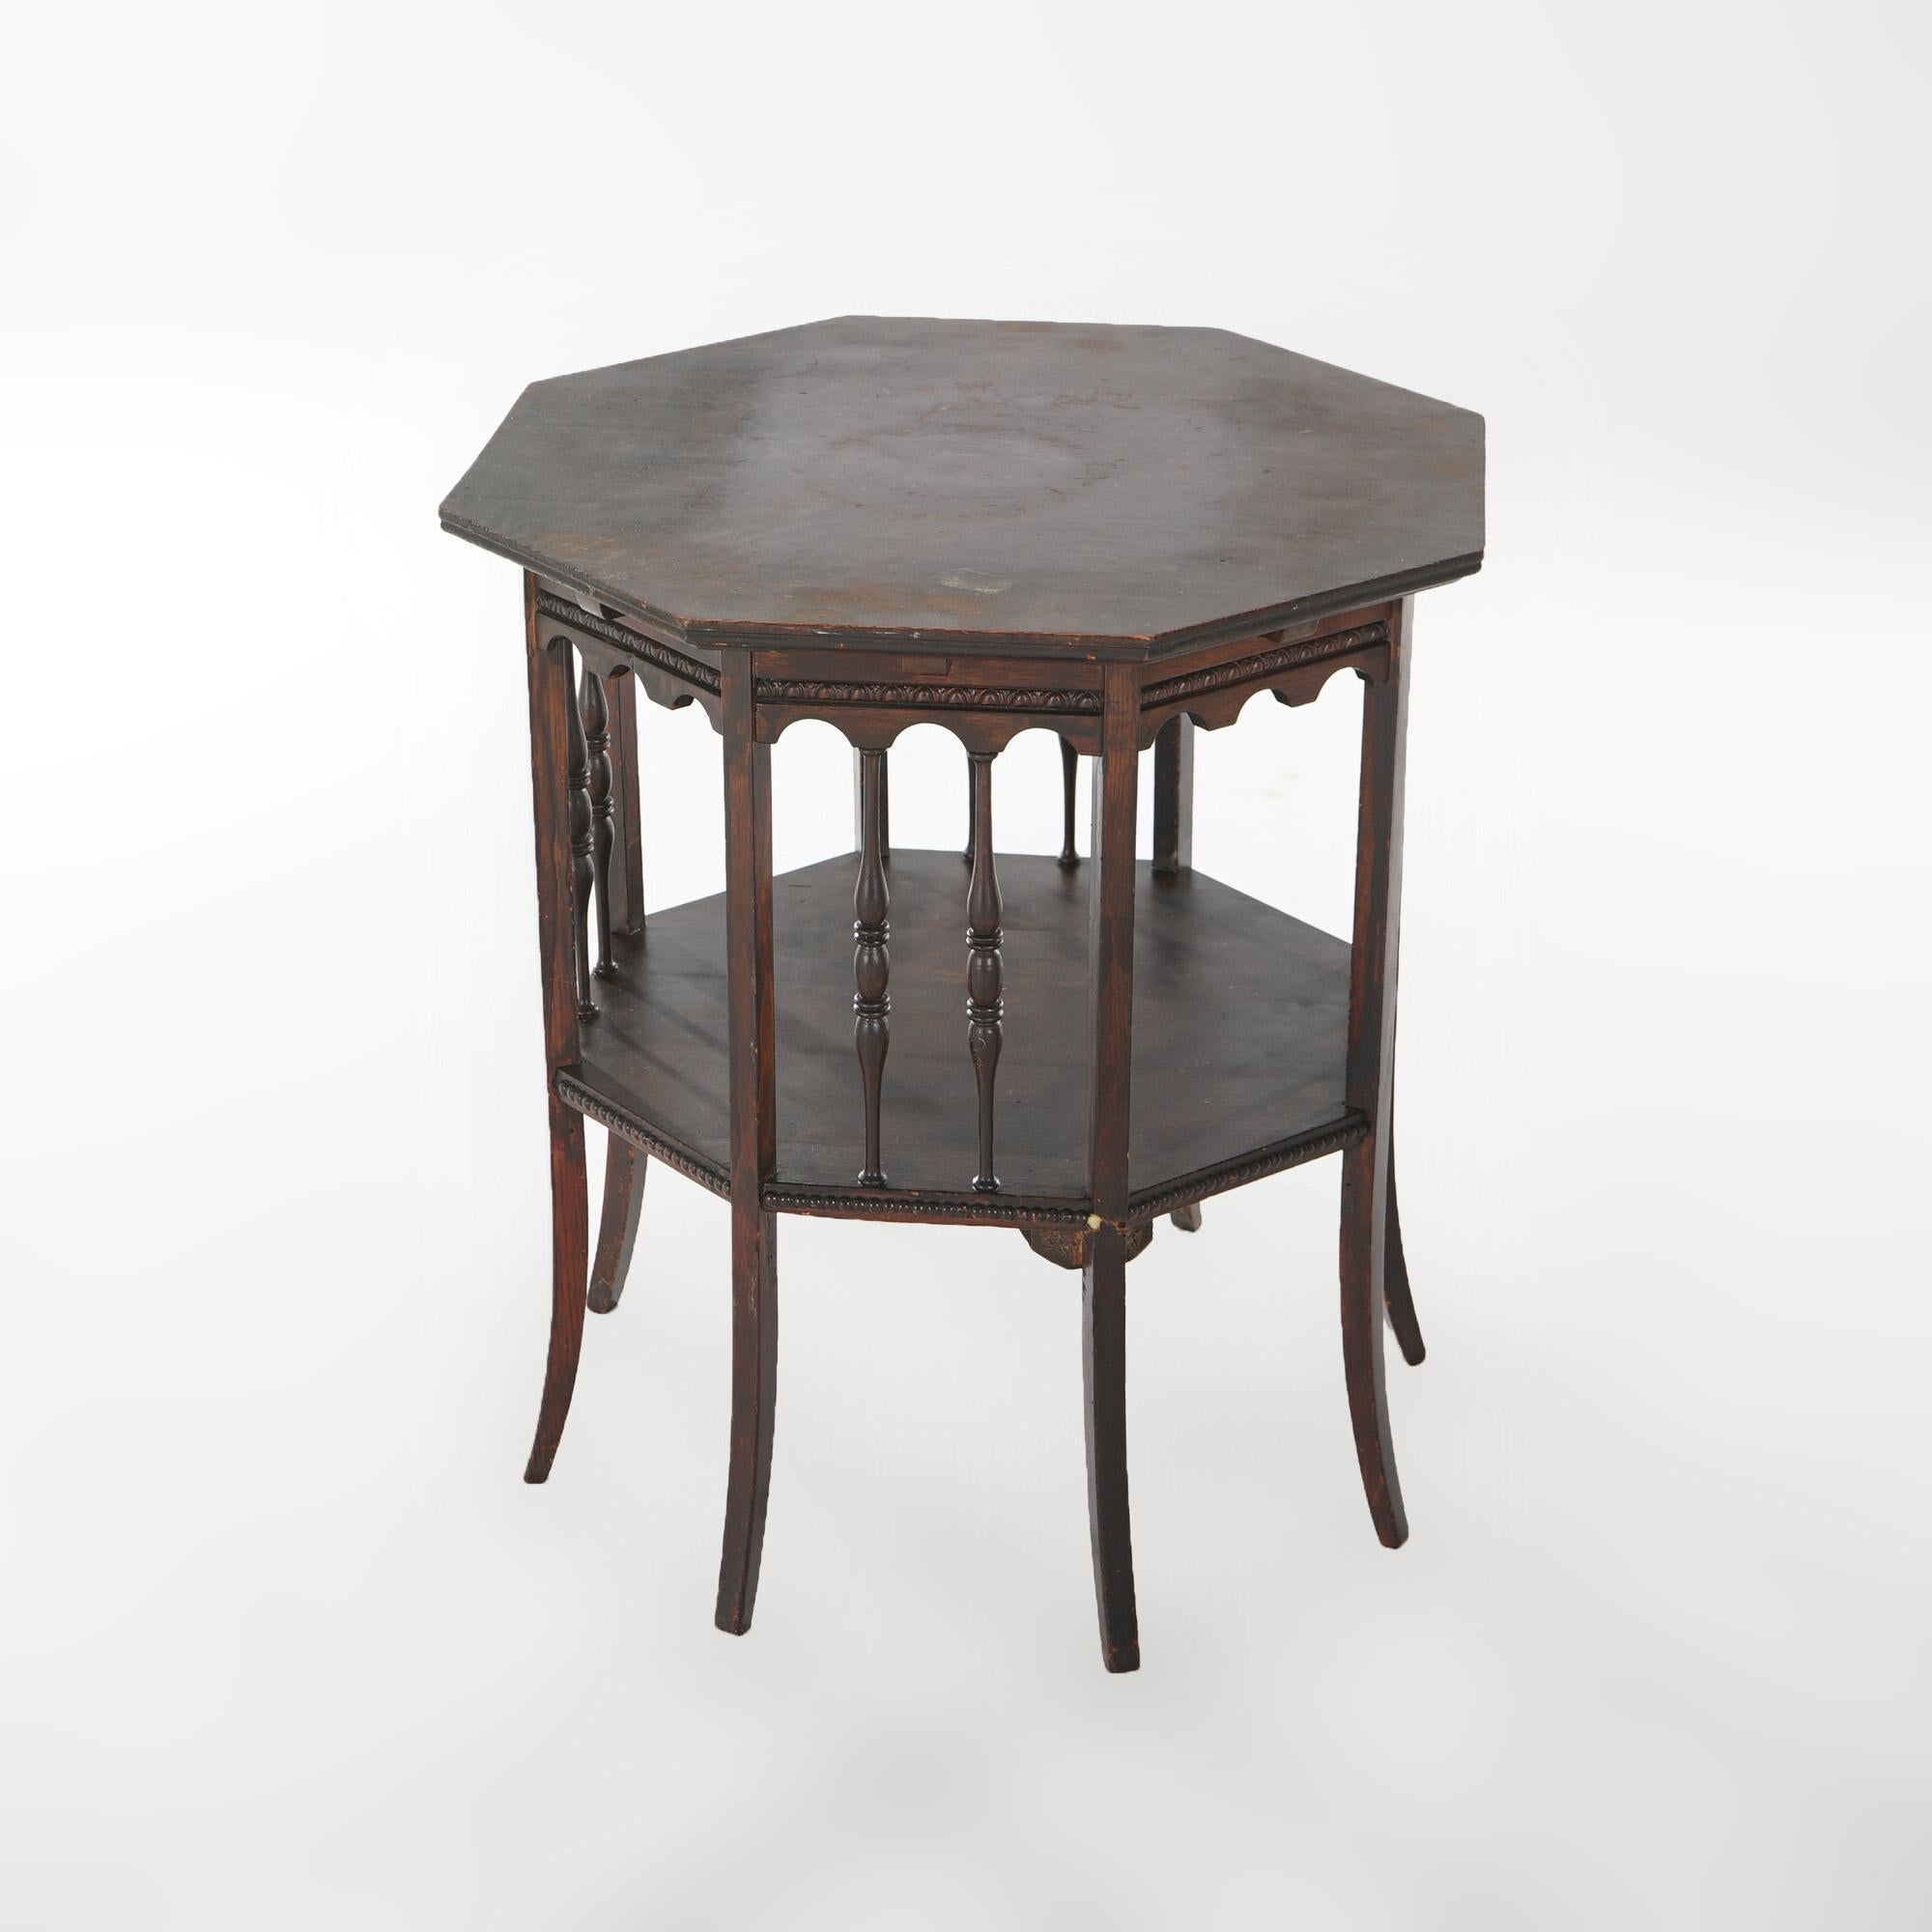 Table d'appoint antique de style Antiques et Crafts, en chêne, avec plateau octogonal, étagère inférieure, supports en fuseau et pieds carrés évasés, vers 1910.

Mesures - 24,25 